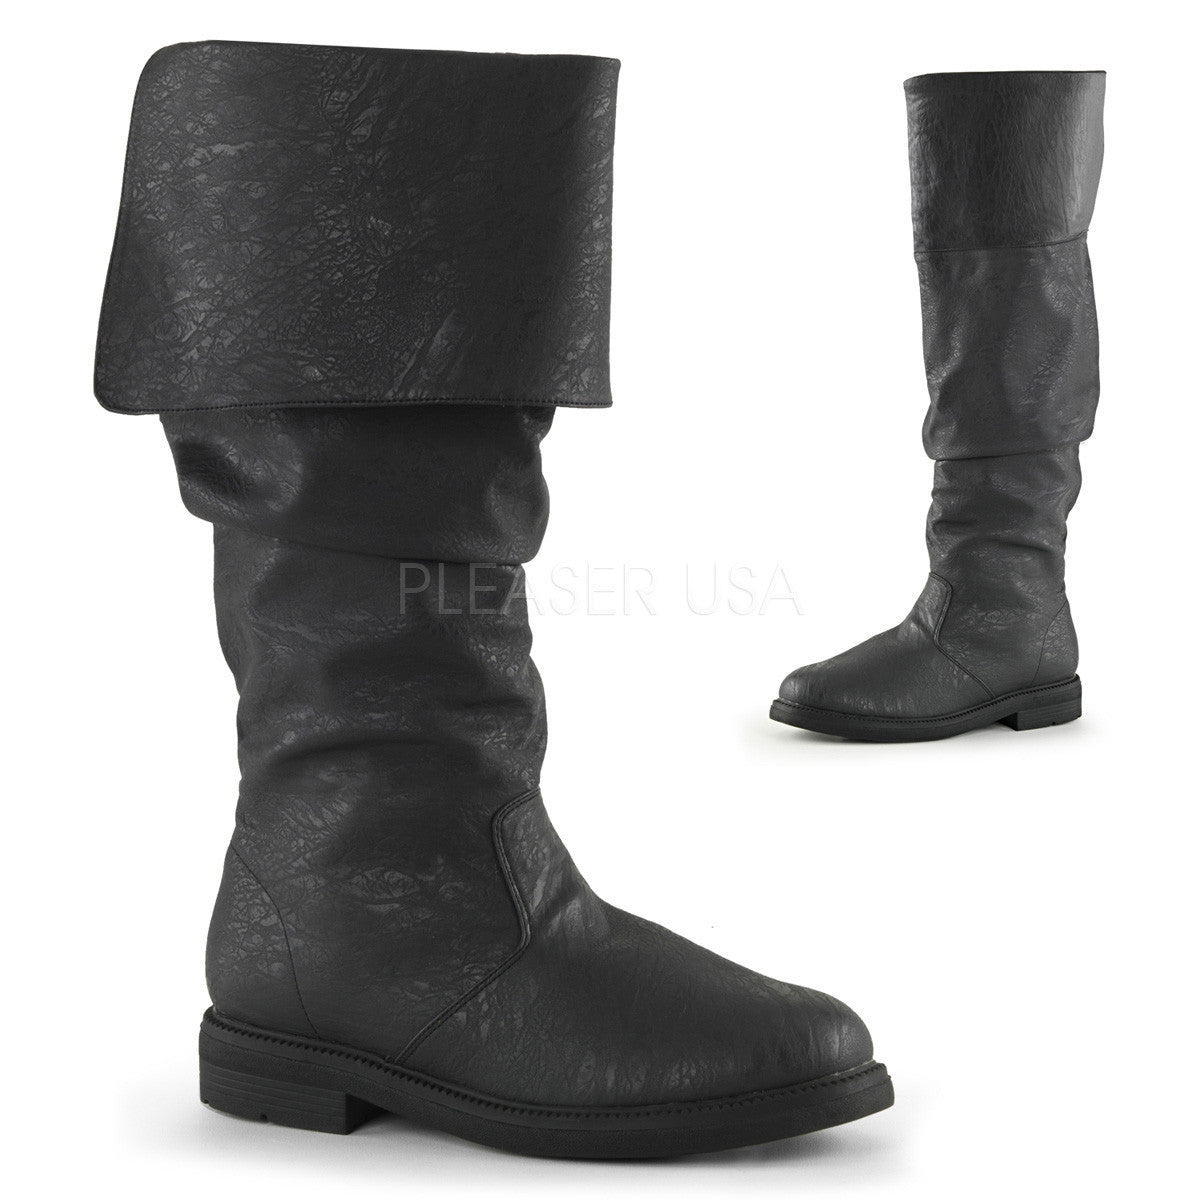 Men's Black Renaissance Medieval Pirate Boots - Shoecup.com